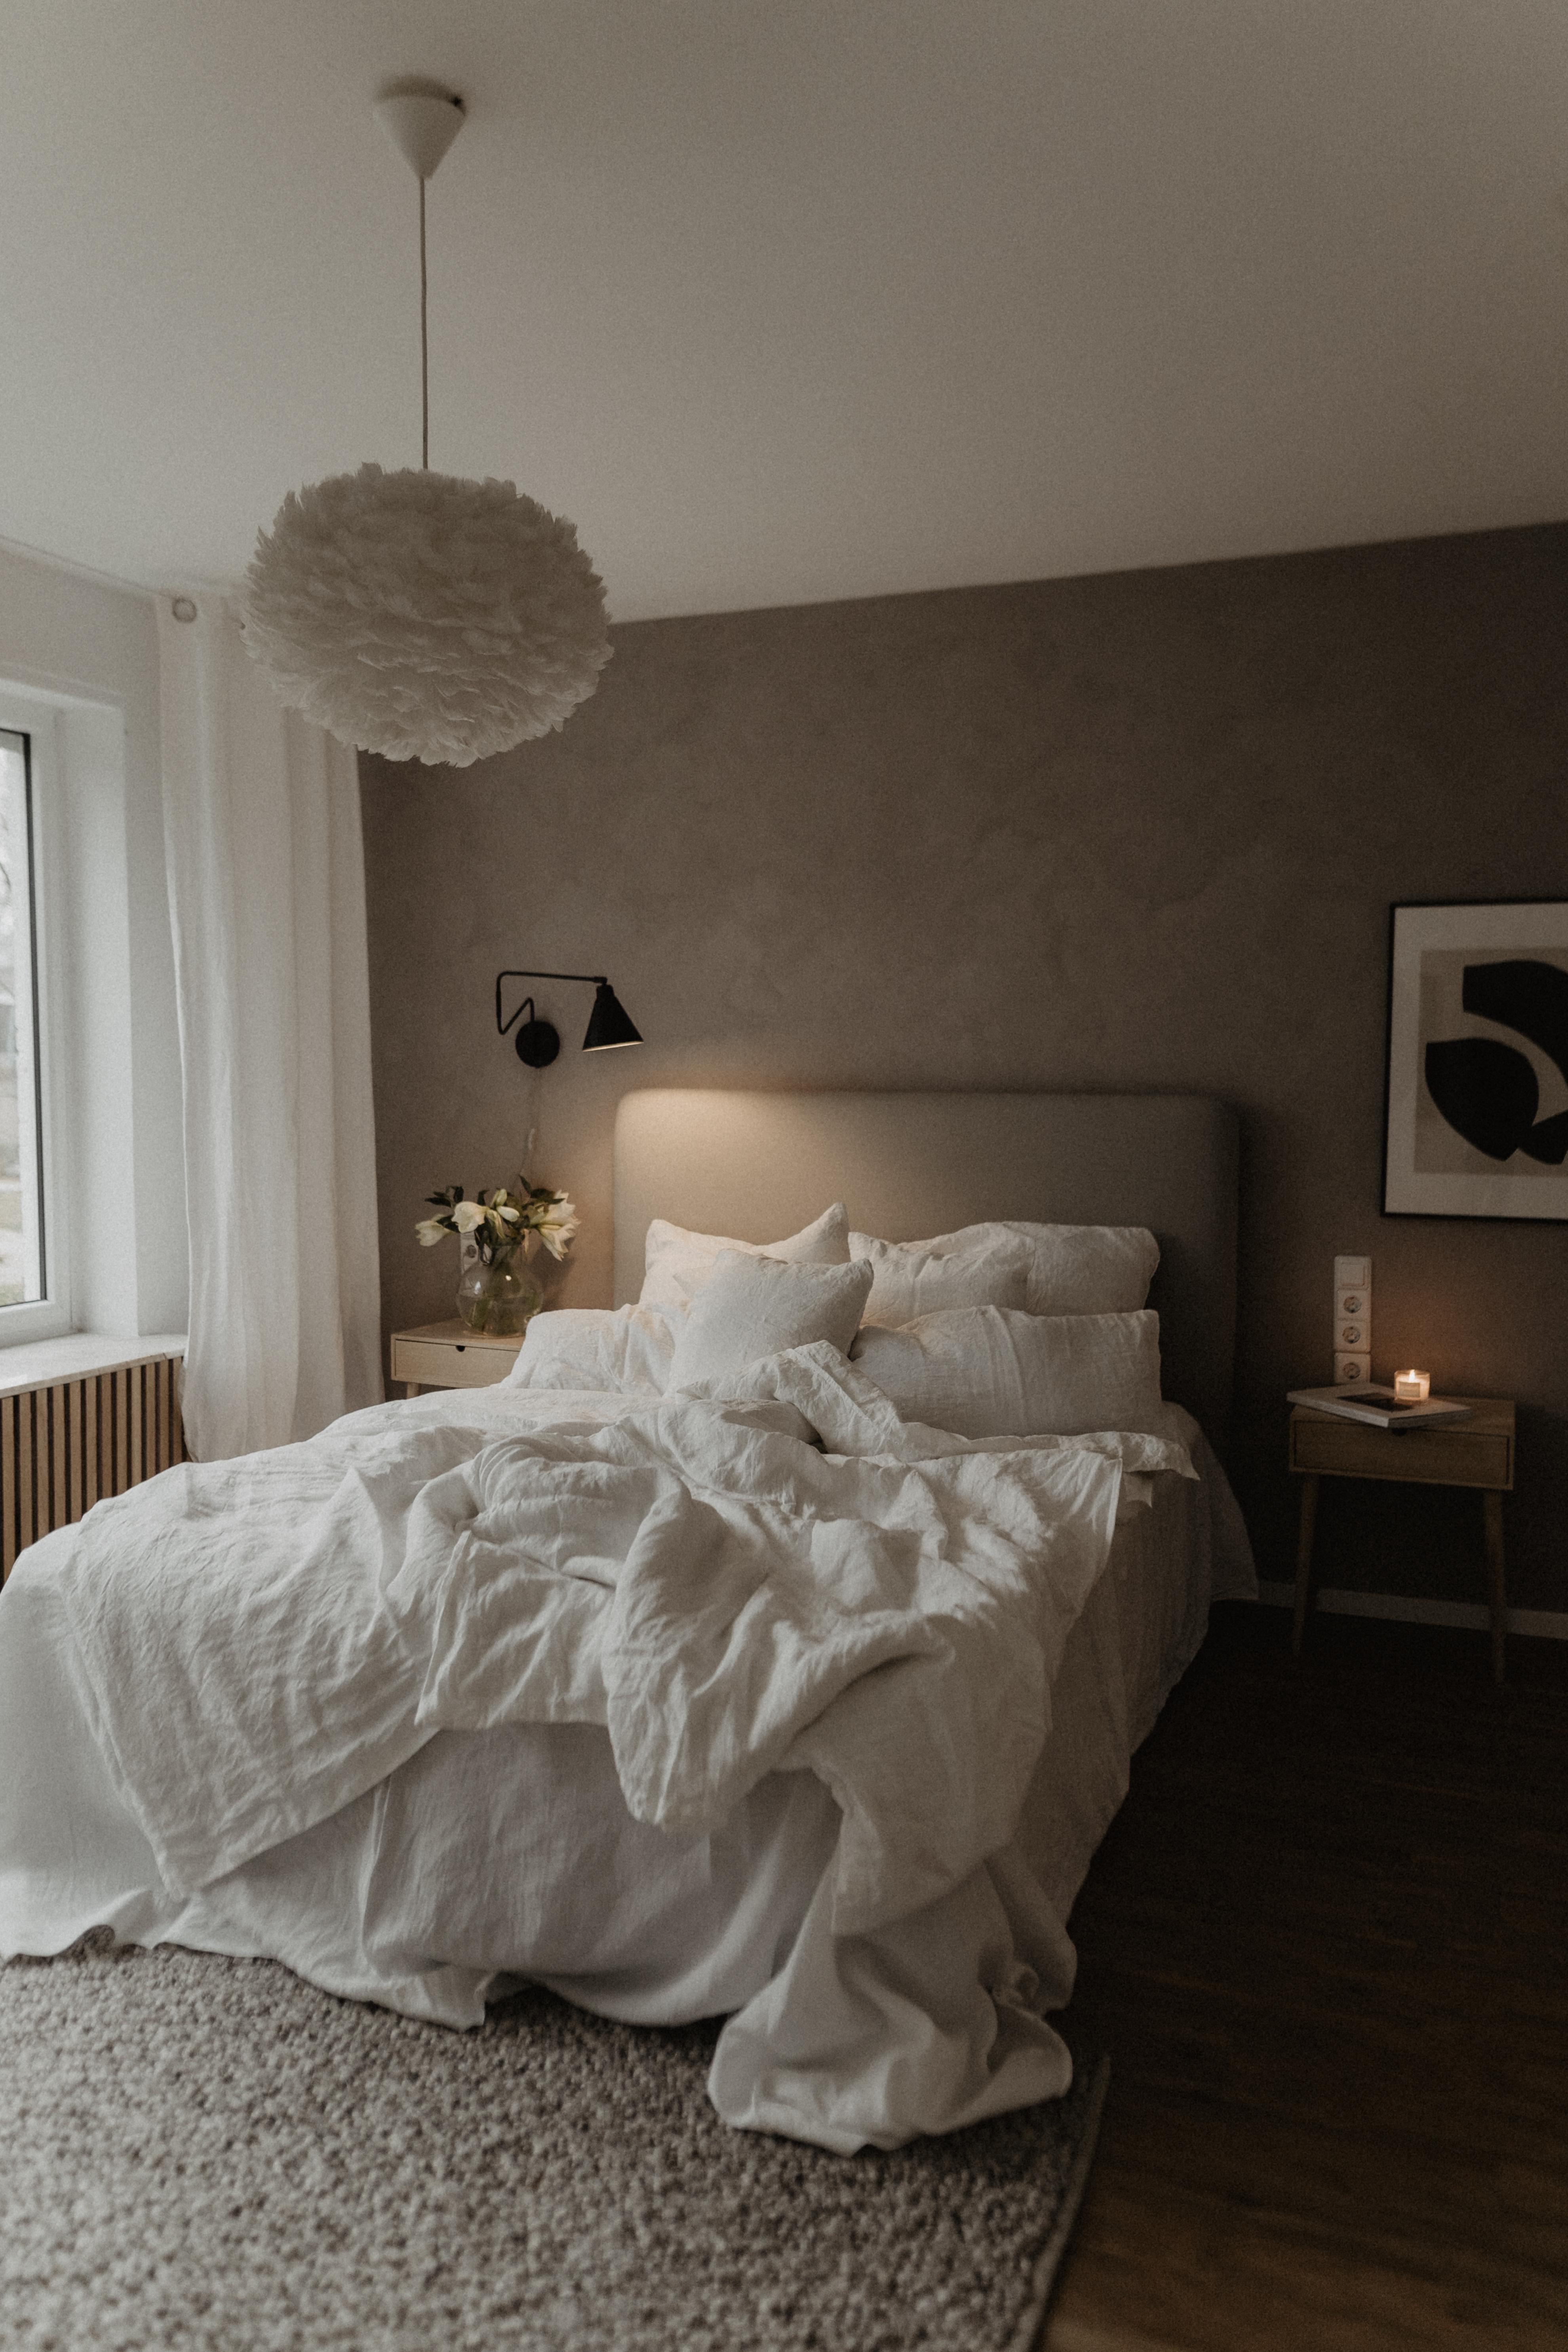 Good night #bedroom #schlafzimmer #schlafenaufwolkesieben #interior